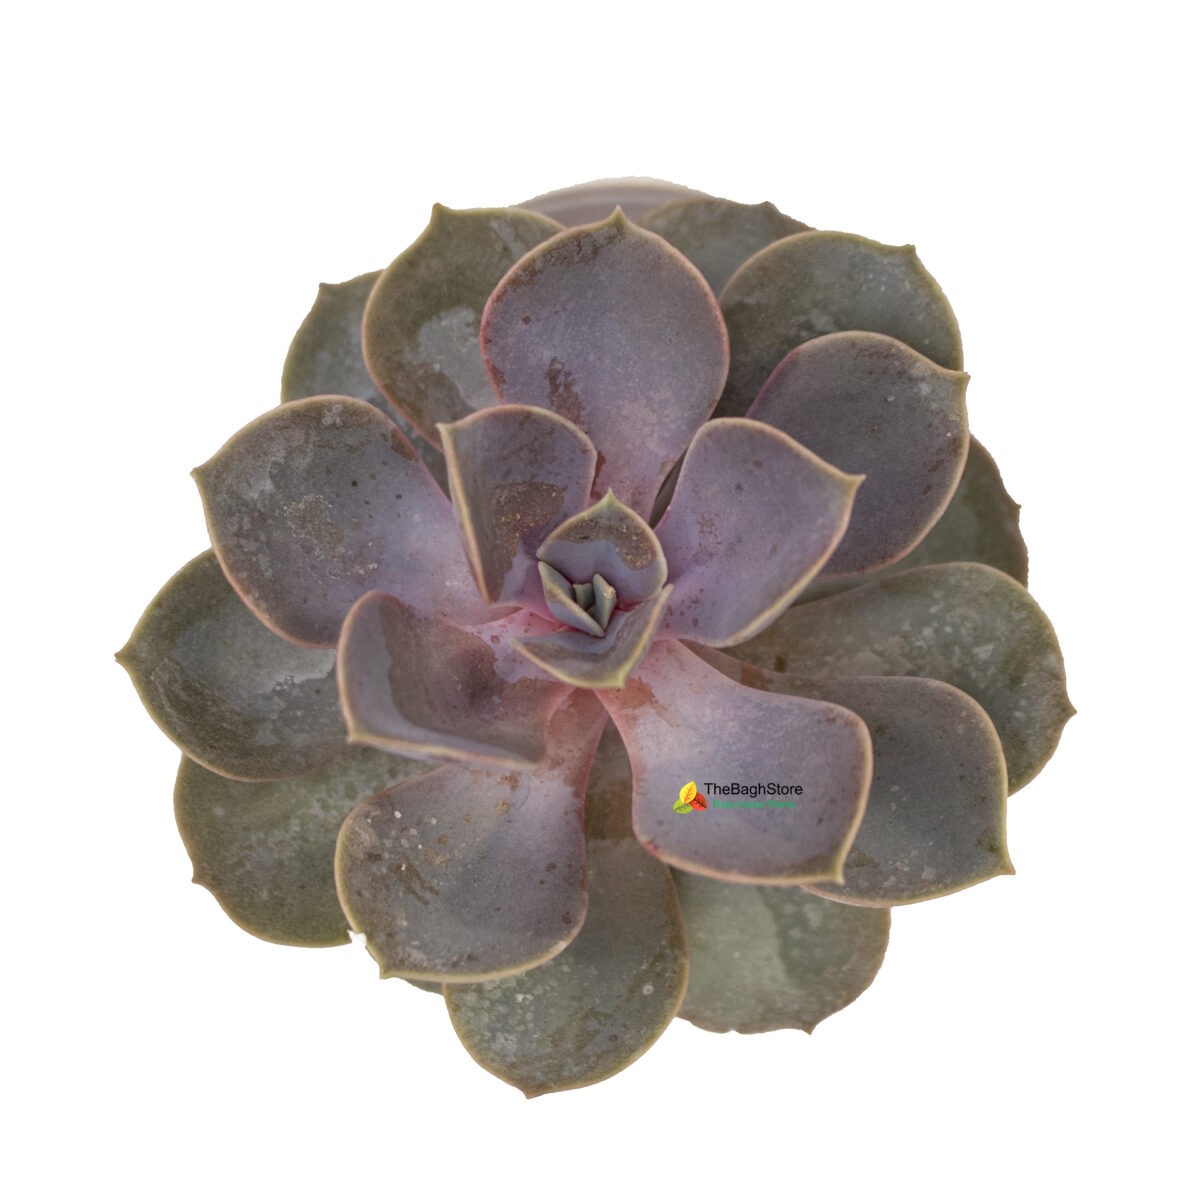 Echeveria Perle Von Nurnberg - Succulent Plant